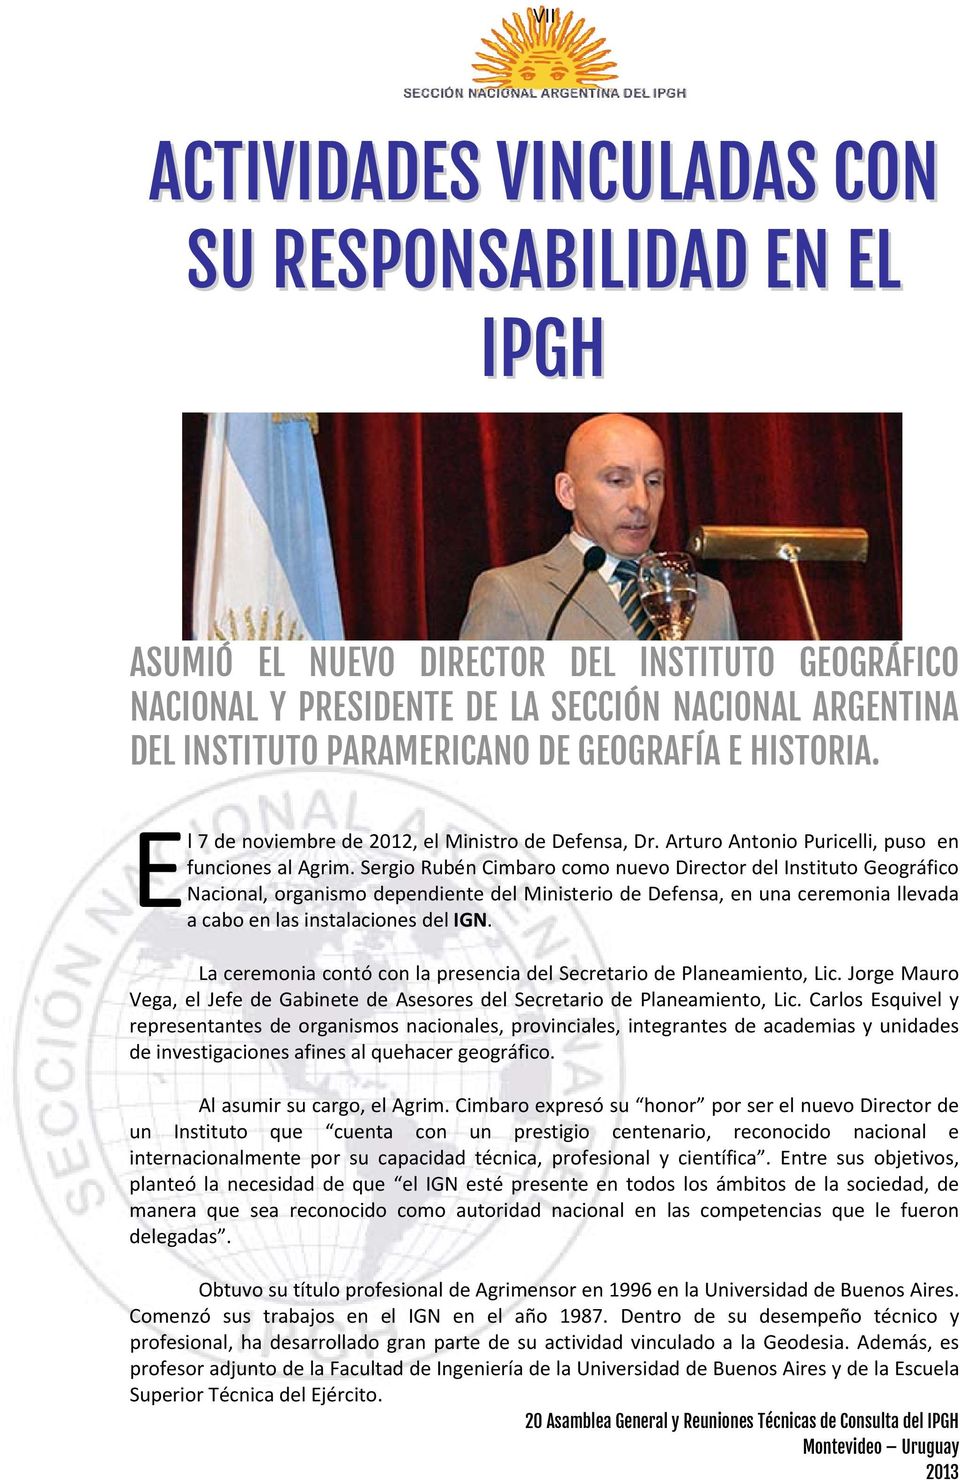 Sergio Rubén Cimbaro como nuevo Director del Instituto Geográfico Nacional, organismo dependiente del Ministerio de Defensa, en una ceremonia llevada a cabo en las instalaciones del IGN.